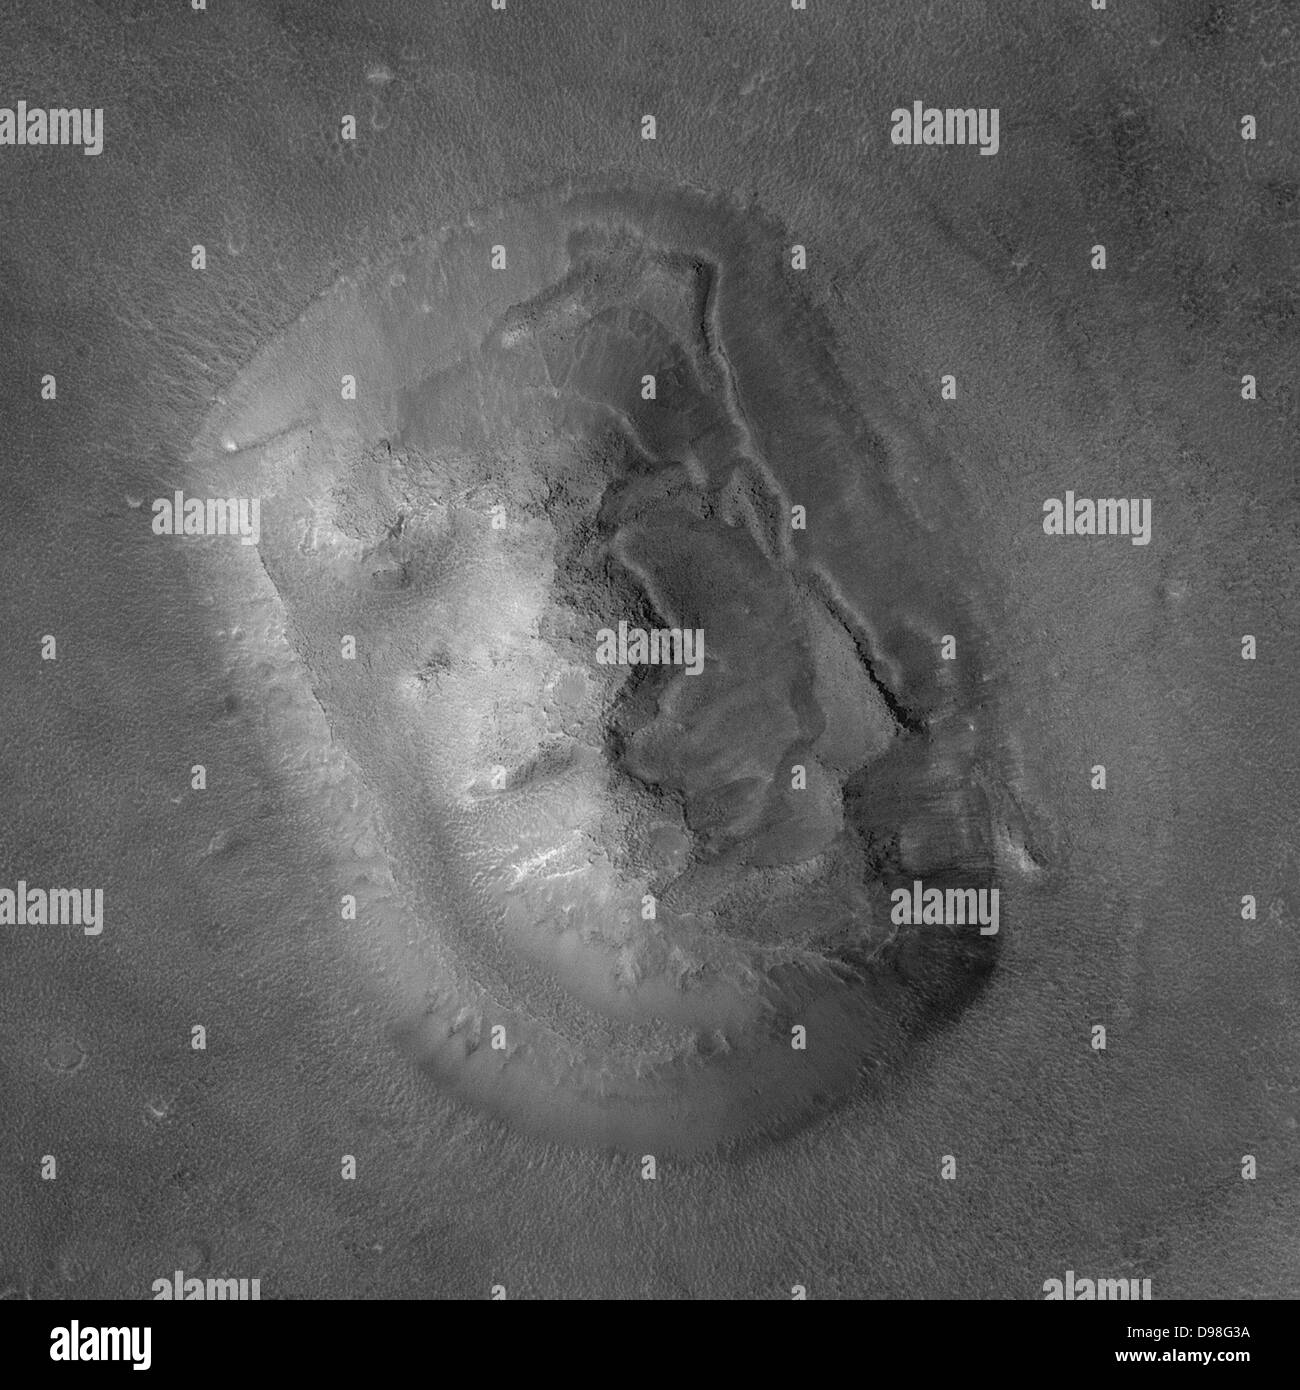 Cydonia è una regione di Marte contenente numerose colline, che ha attirato l attenzione perché una delle colline assomiglia ad una faccia Foto Stock